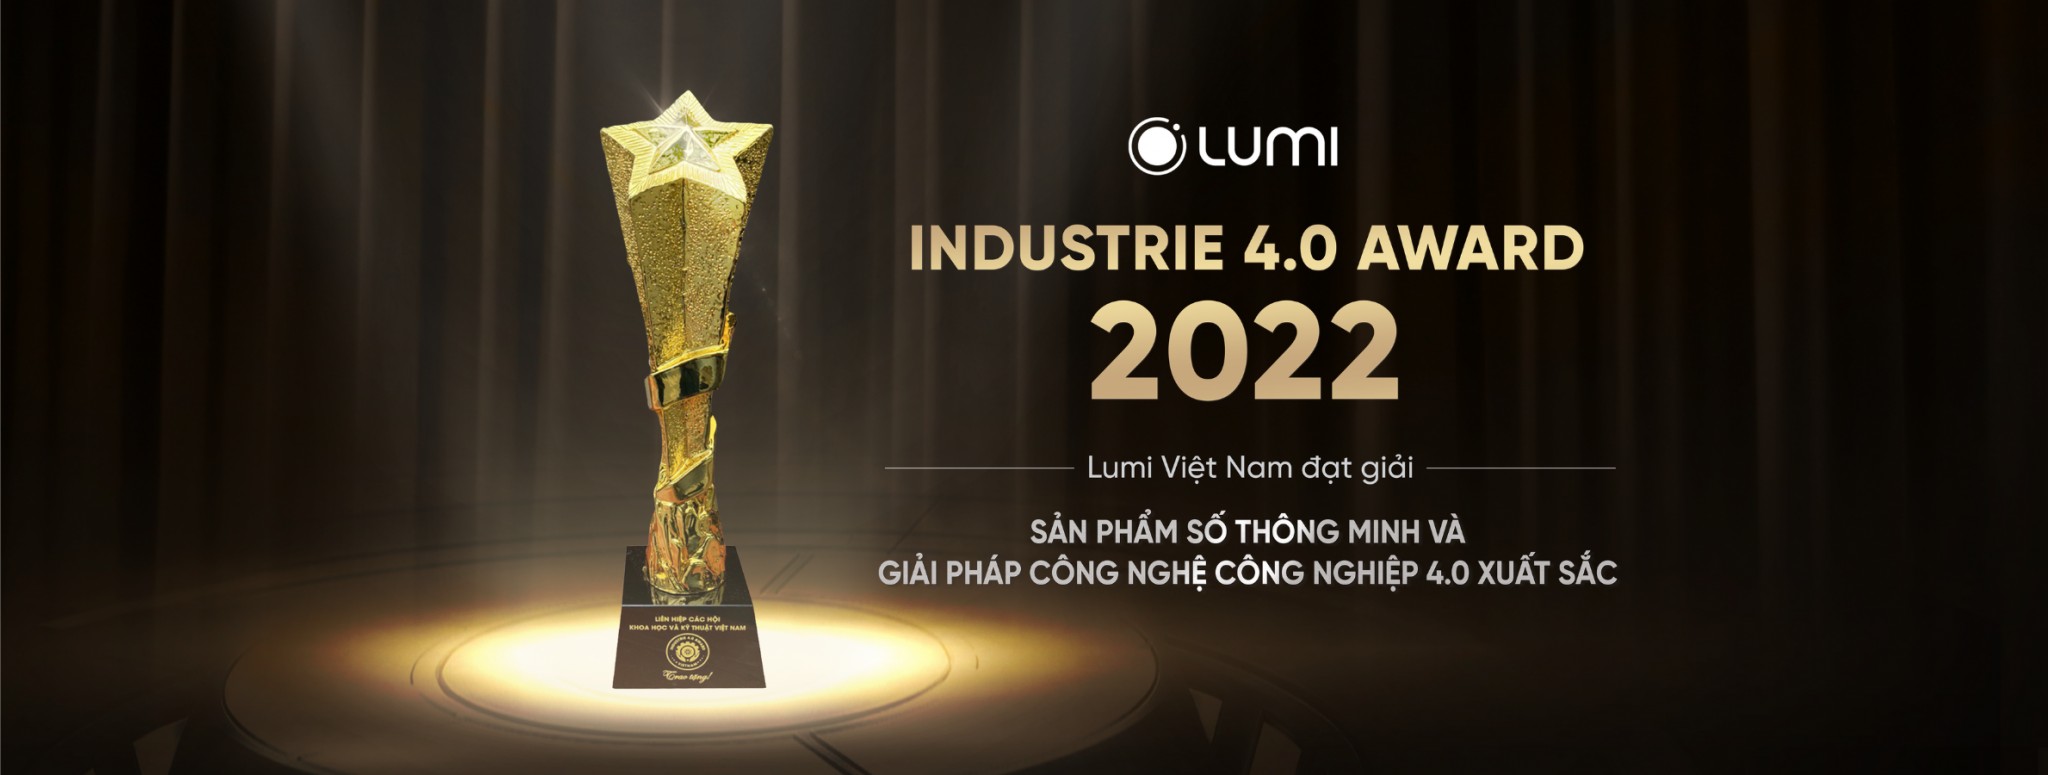 Nhà thông minh Lumi đạt giải Industrie 4.0 Award